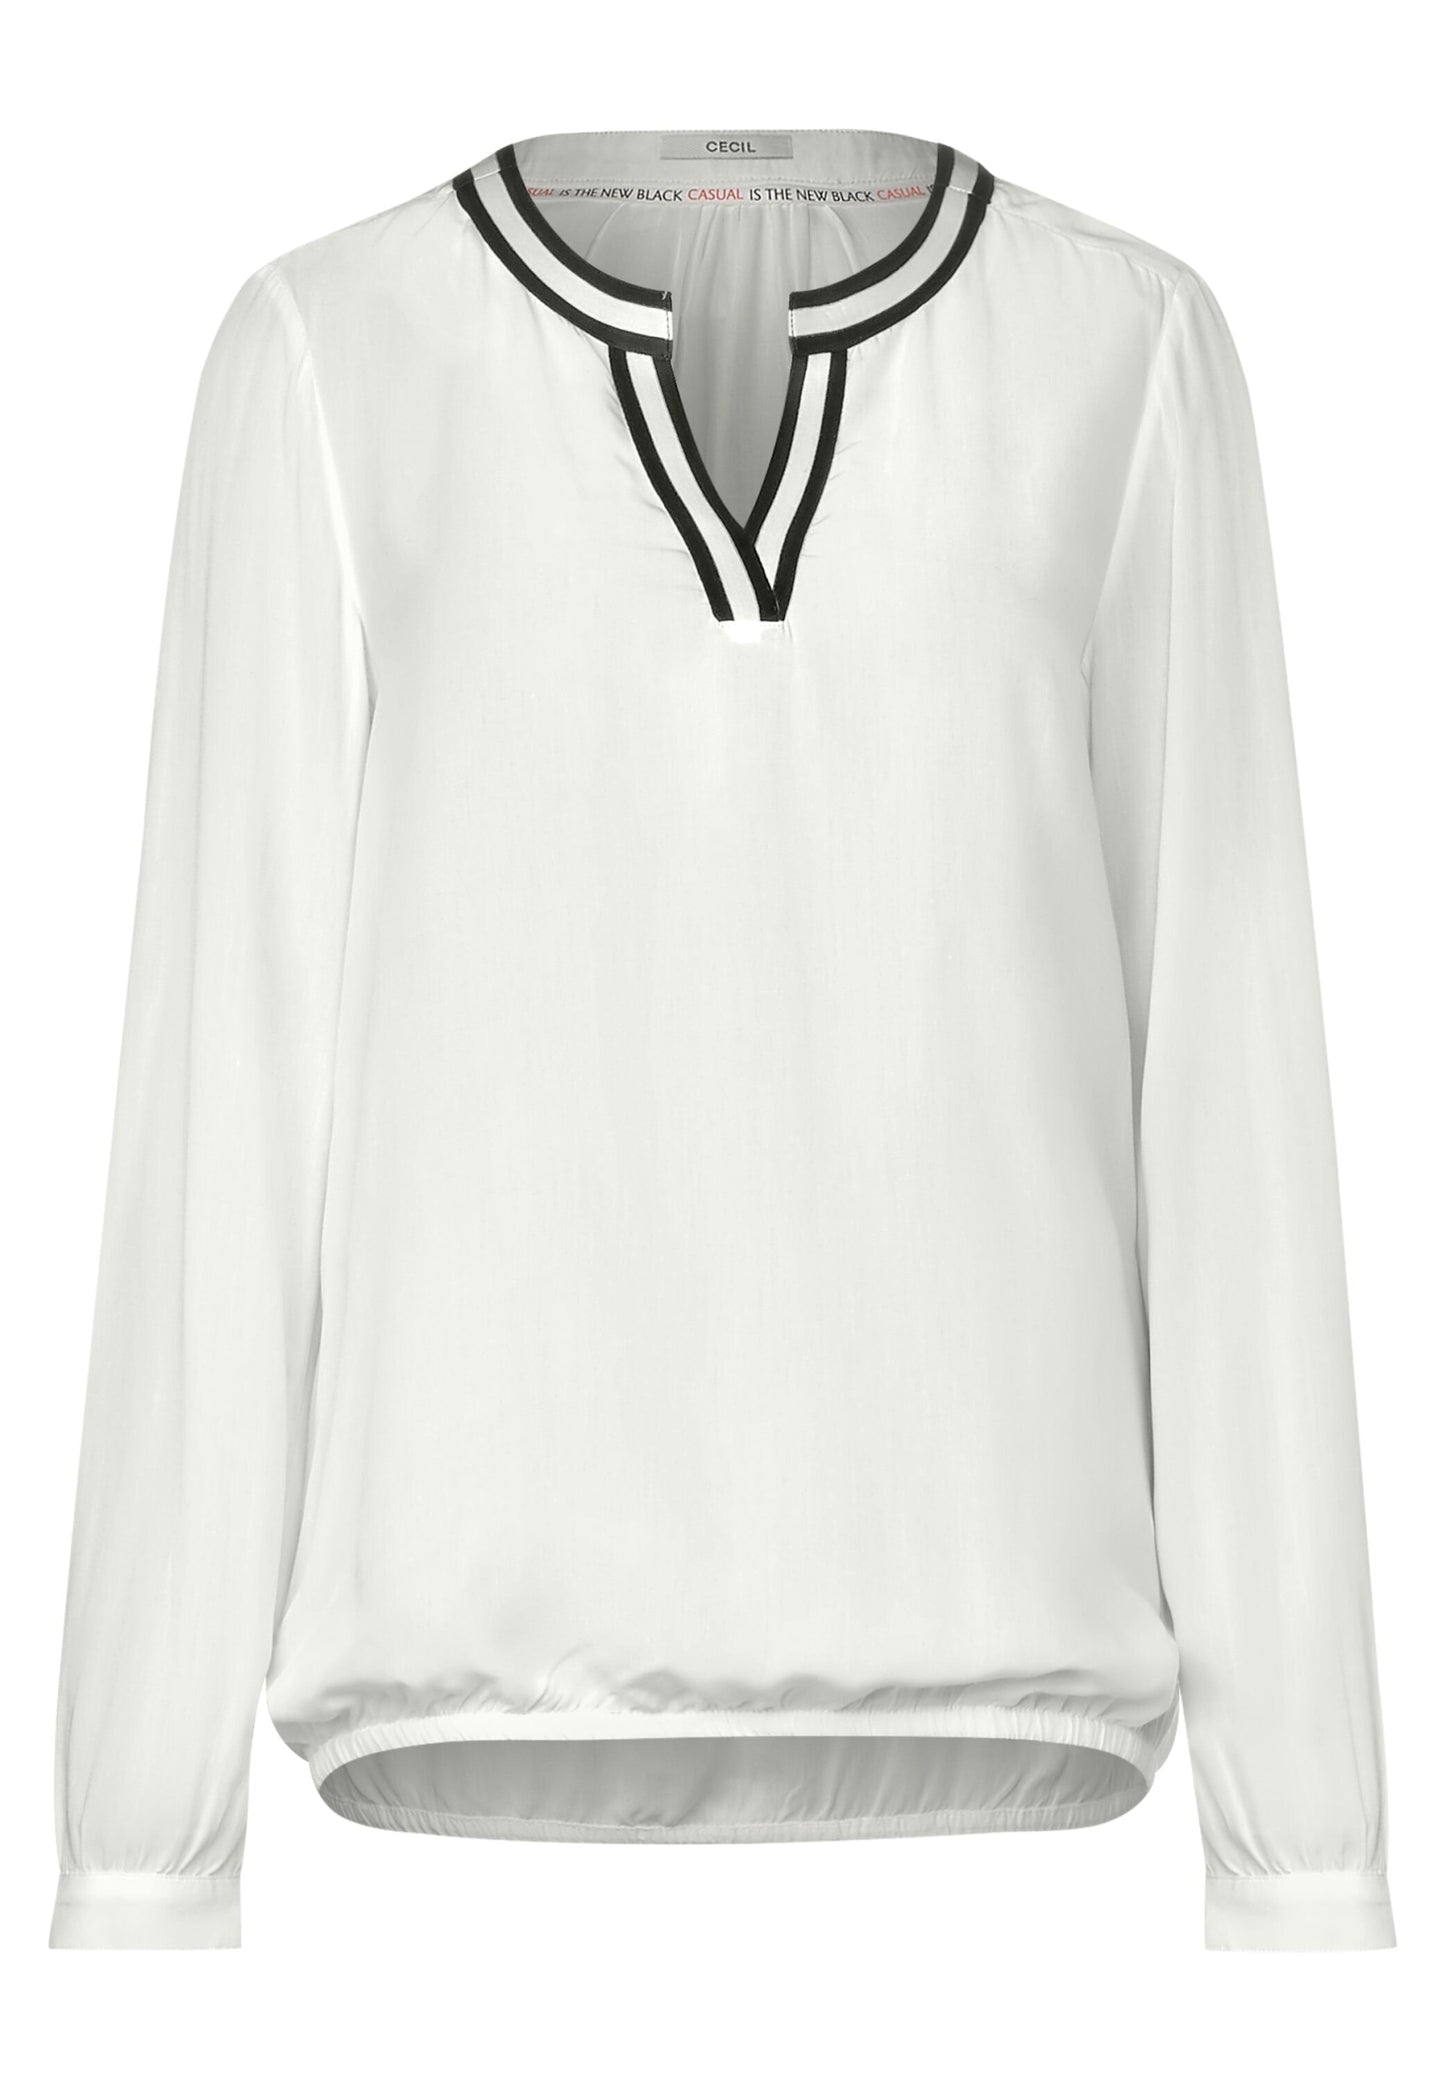 Sporty university blouse